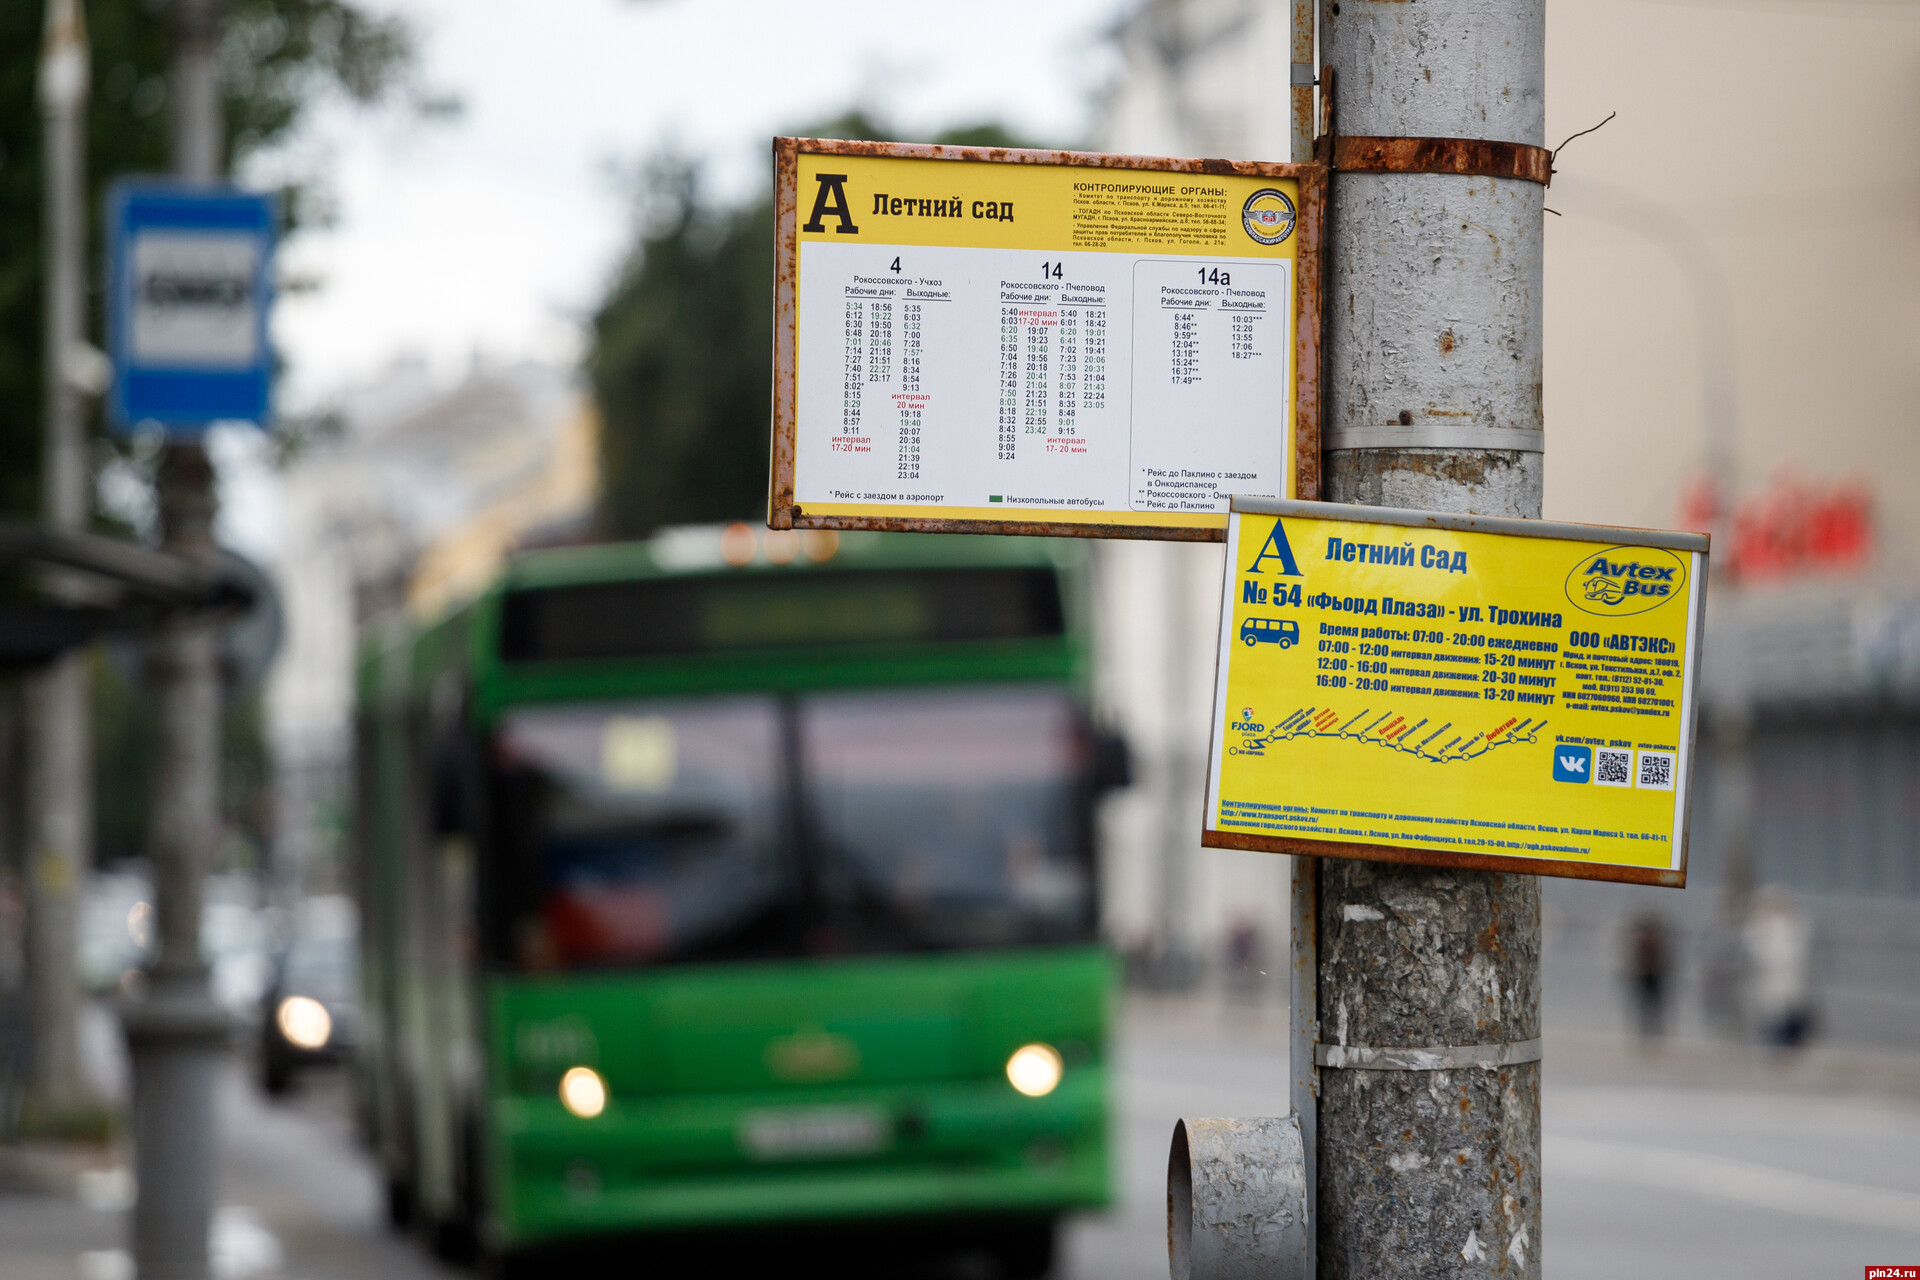 Названа причина сбоев в расписании городских автобусов в Пскове